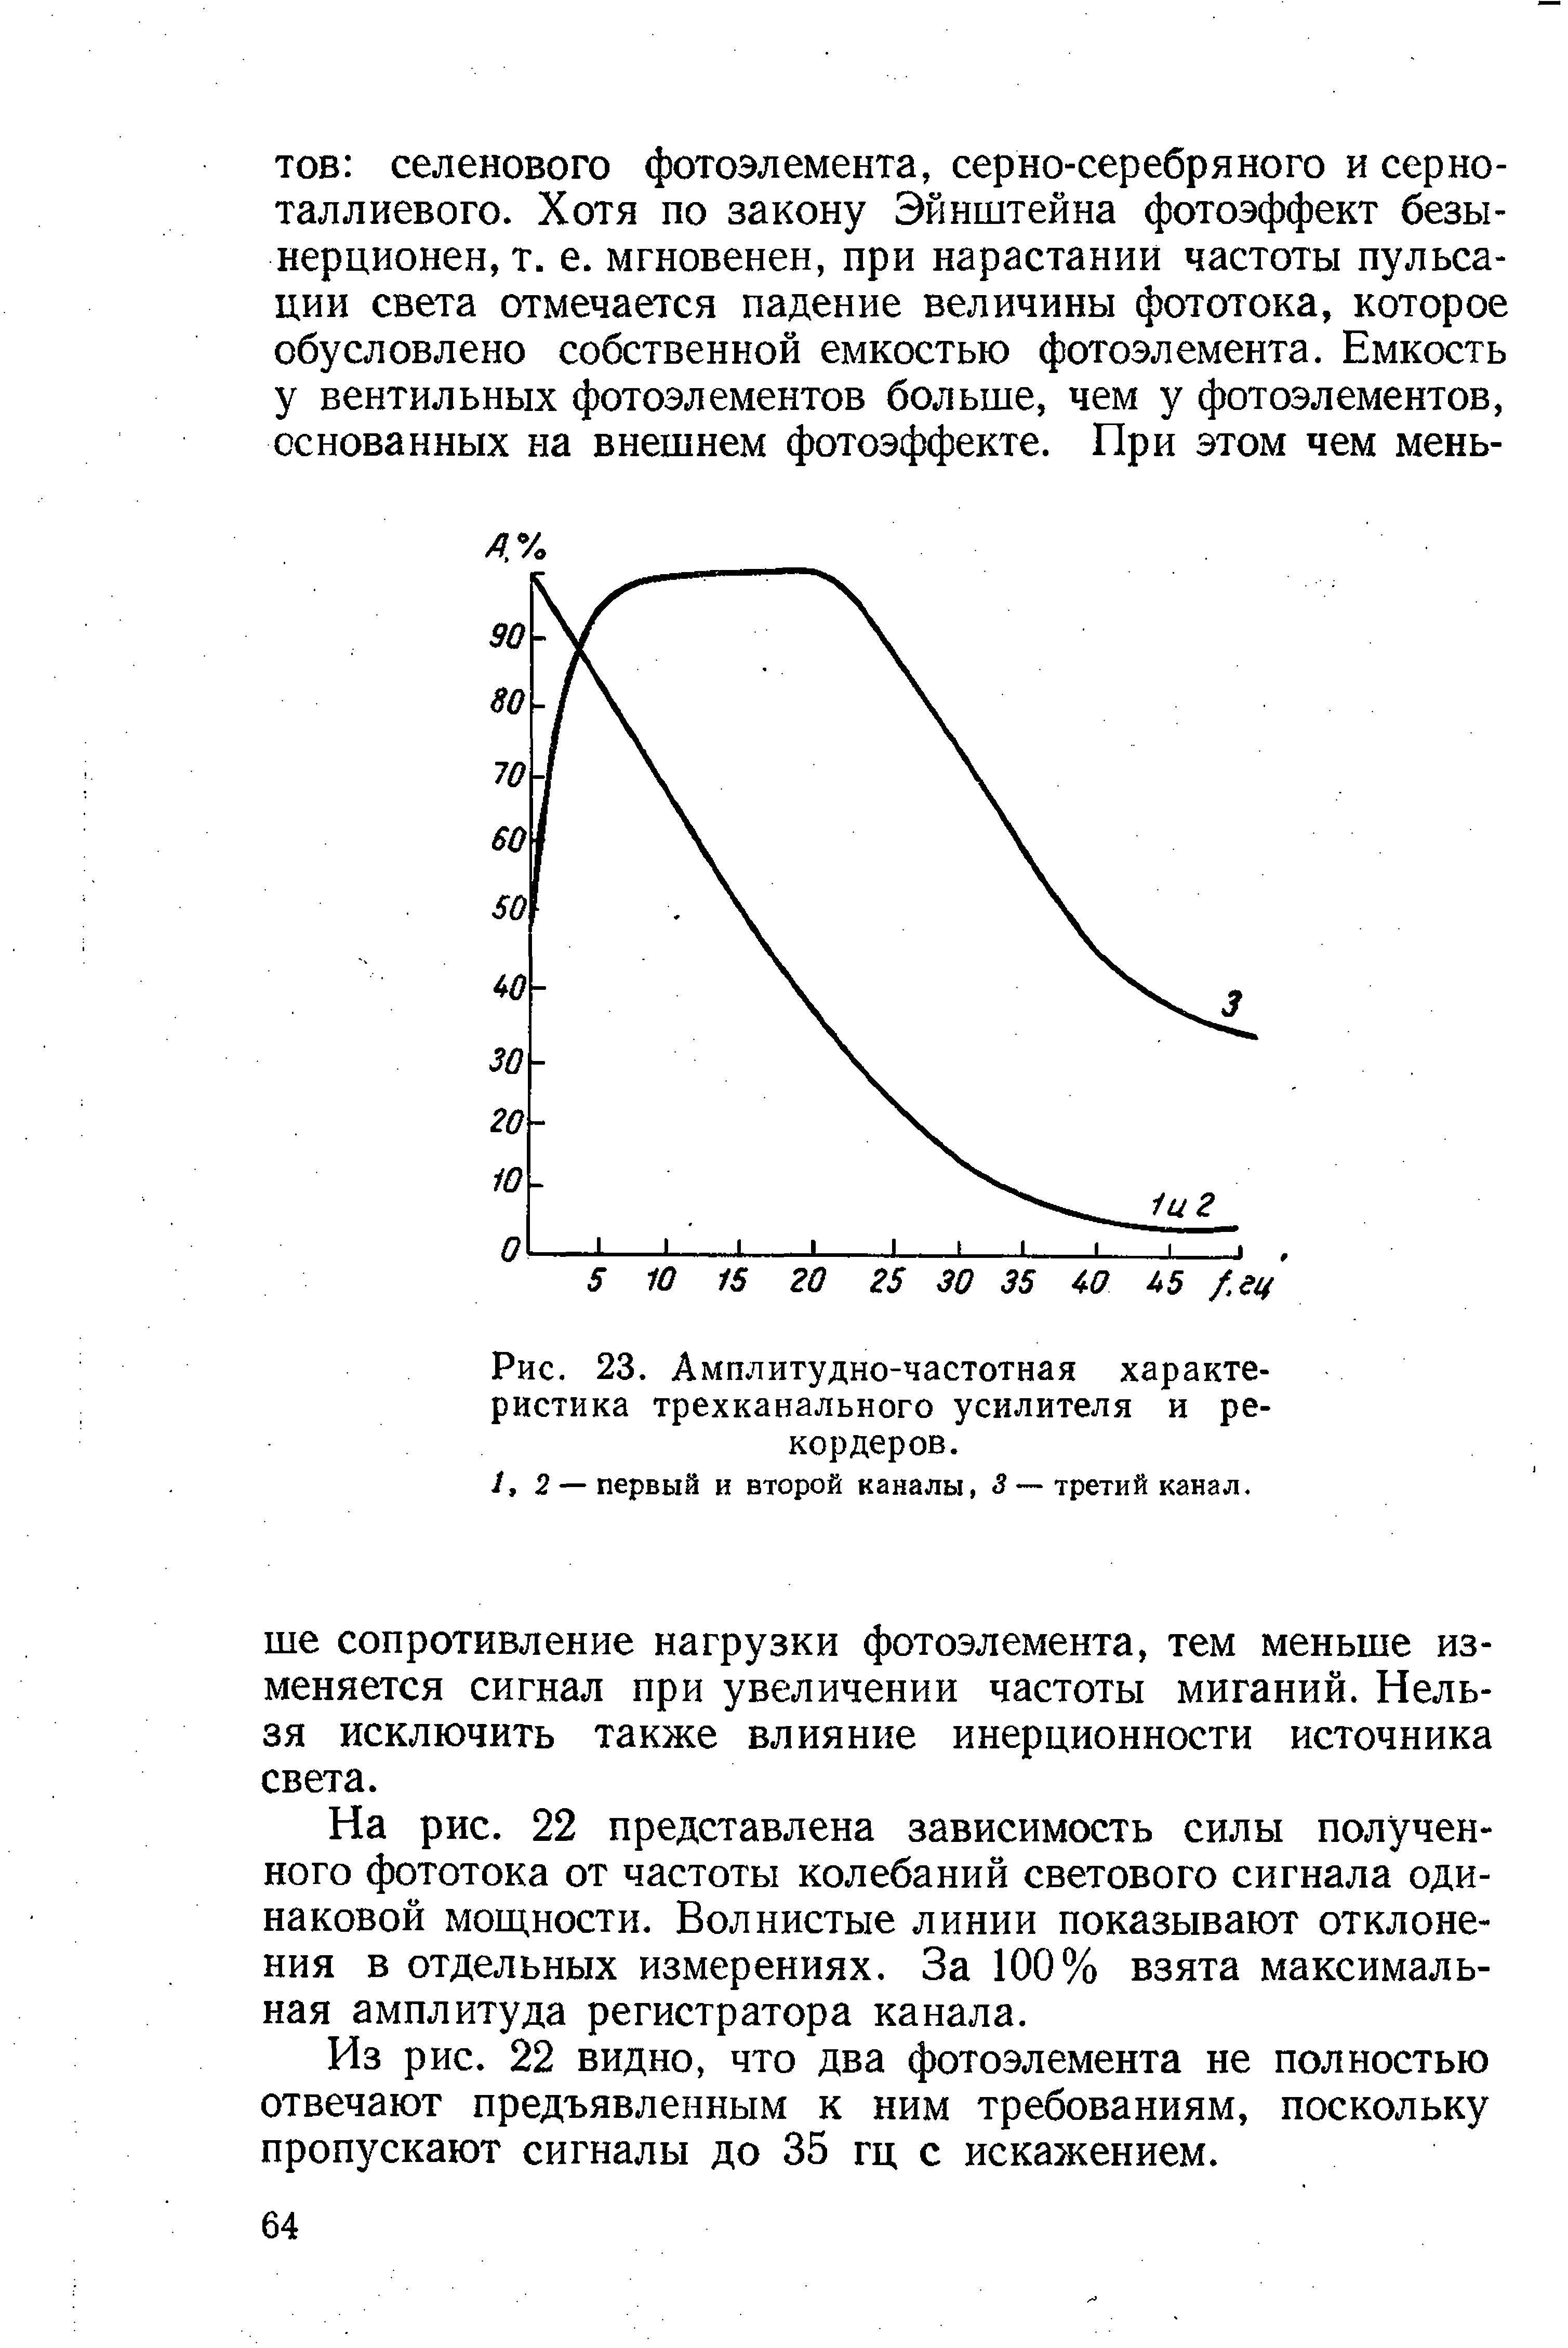 Рис. 23. Амплитудно-частотная характеристика трехканального усилителя и рекордеров.